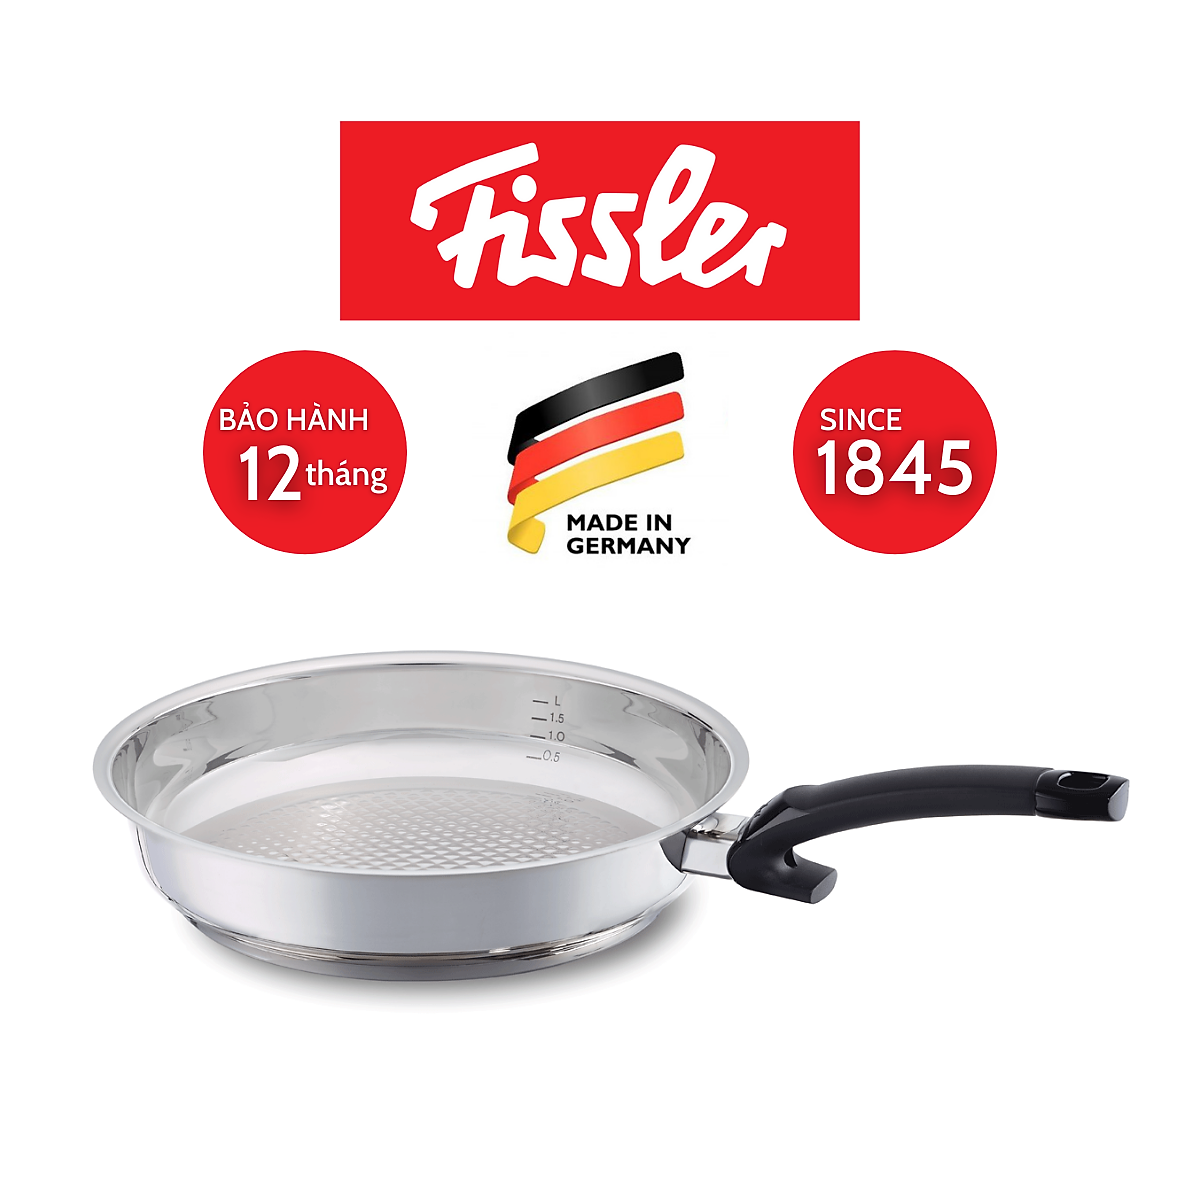 Chảo Inox Fissler Crispy Steelux Comfort, Dùng Cho Mọi Loại Bếp, Made In Germany, Hàng Chính Hãng